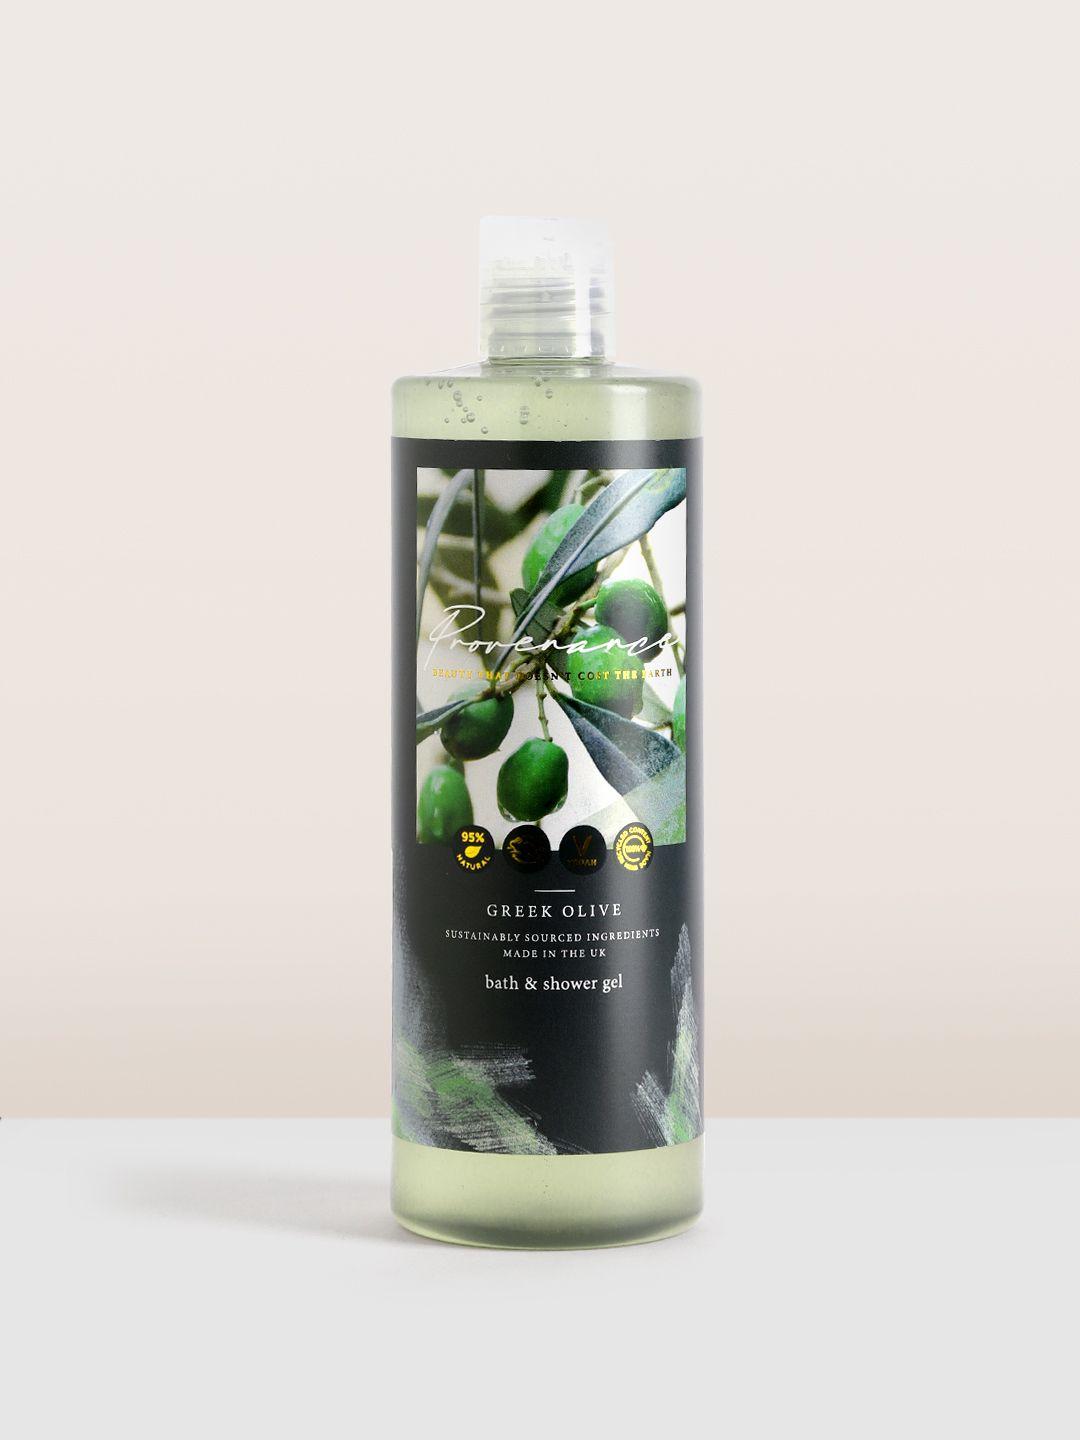 marks & spencer provenance greek olive bath & shower gel 500 ml